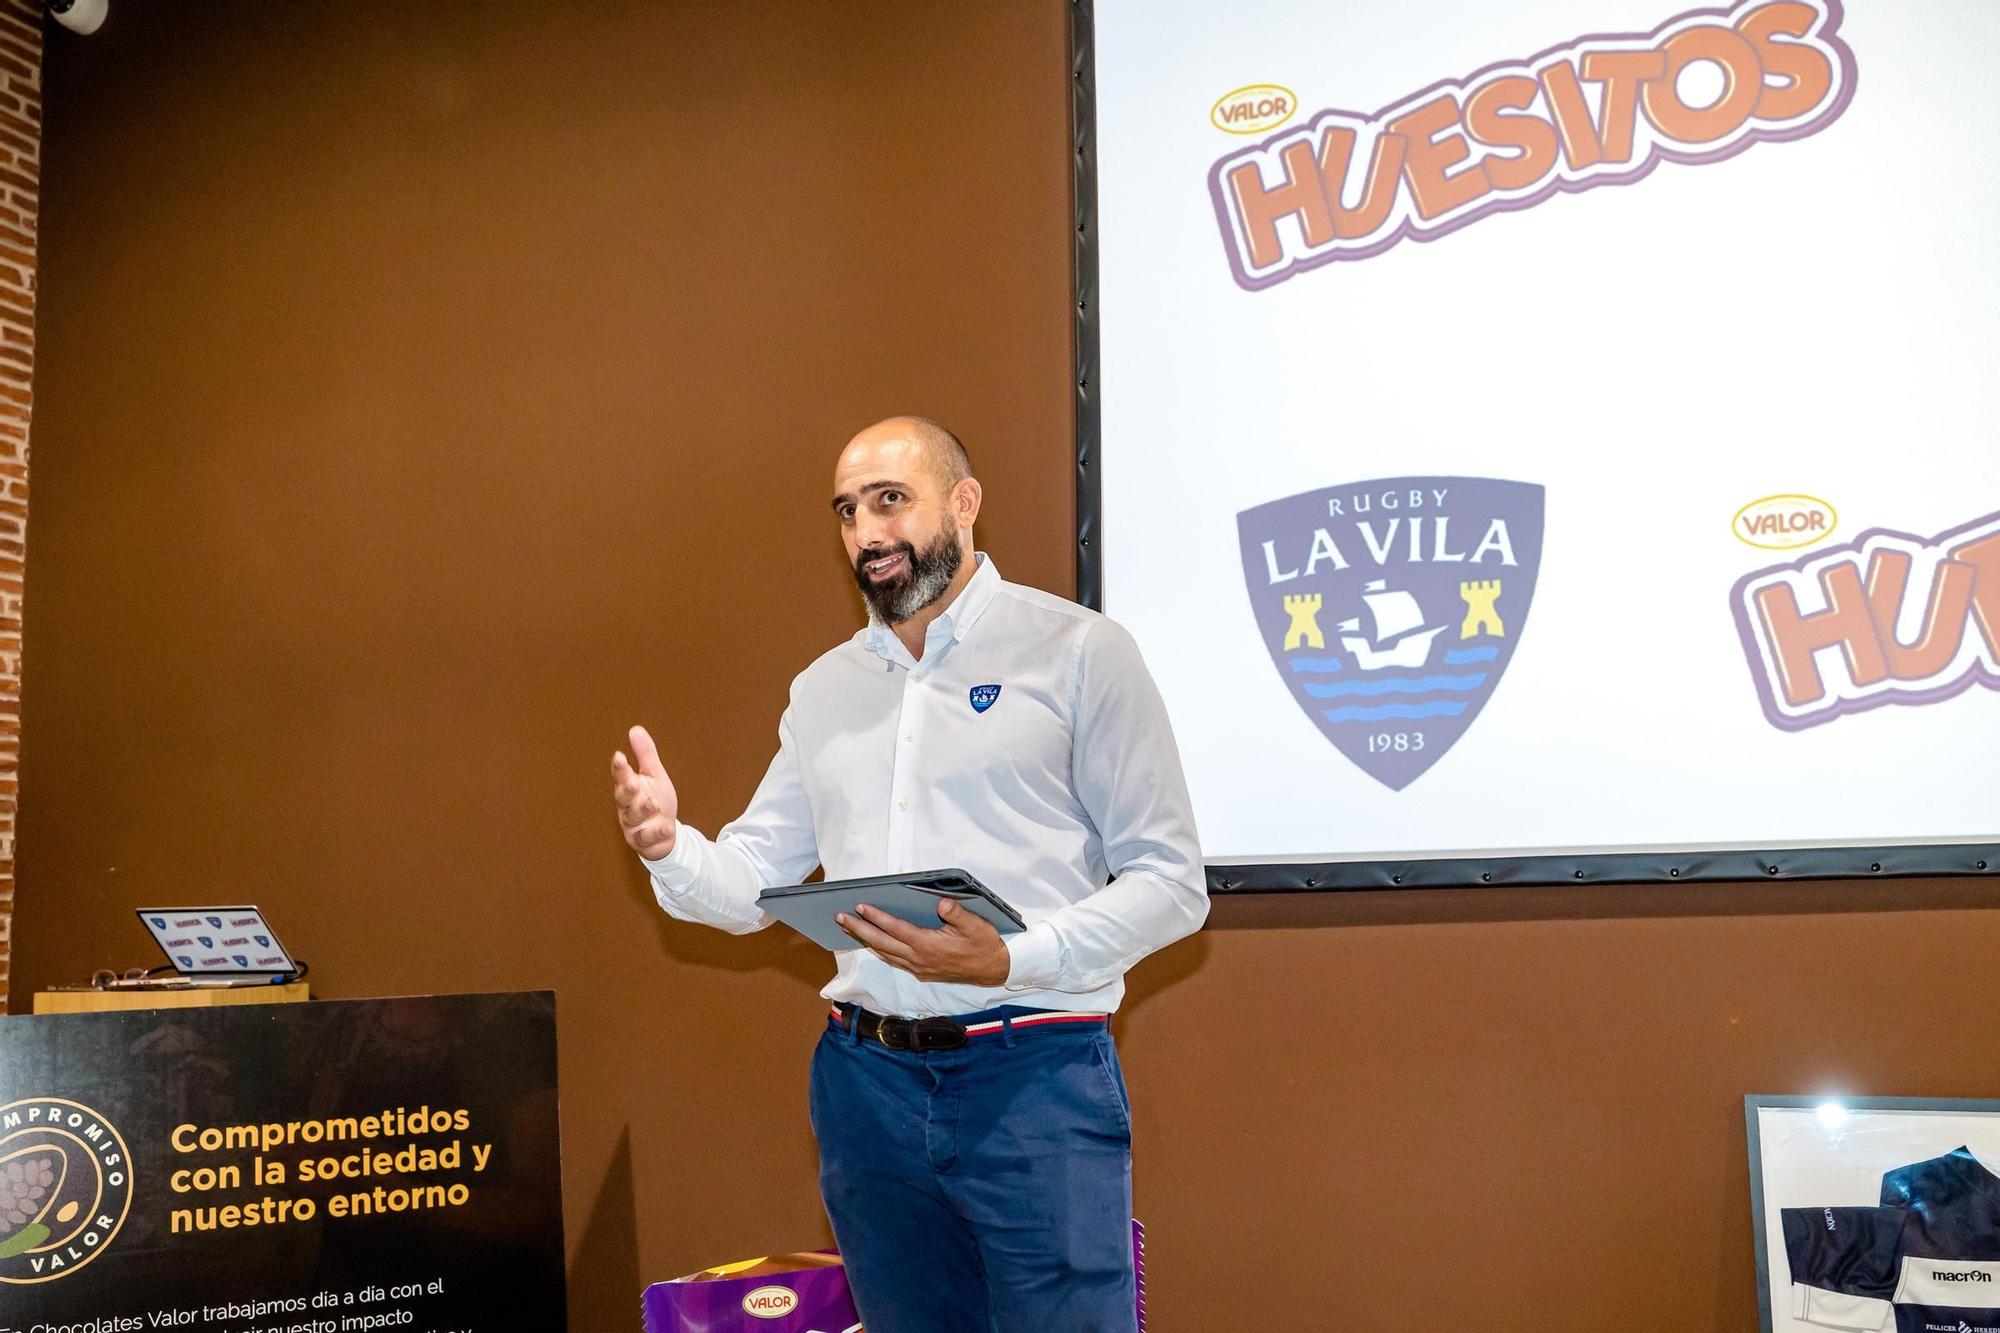 Presentación de Huesitos Rugby La Vila